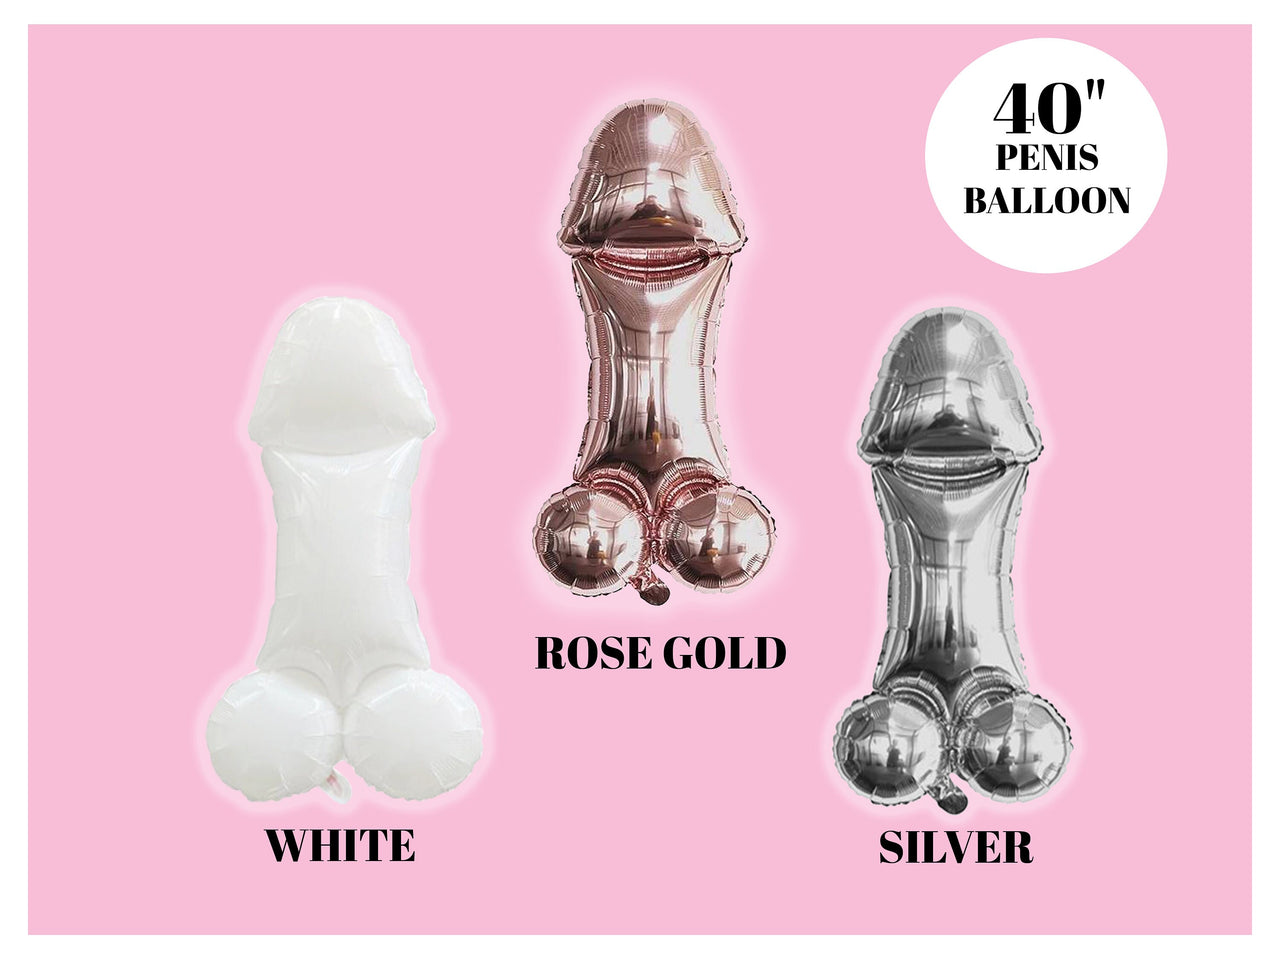 JUMBO XL 40" Penis Balloon